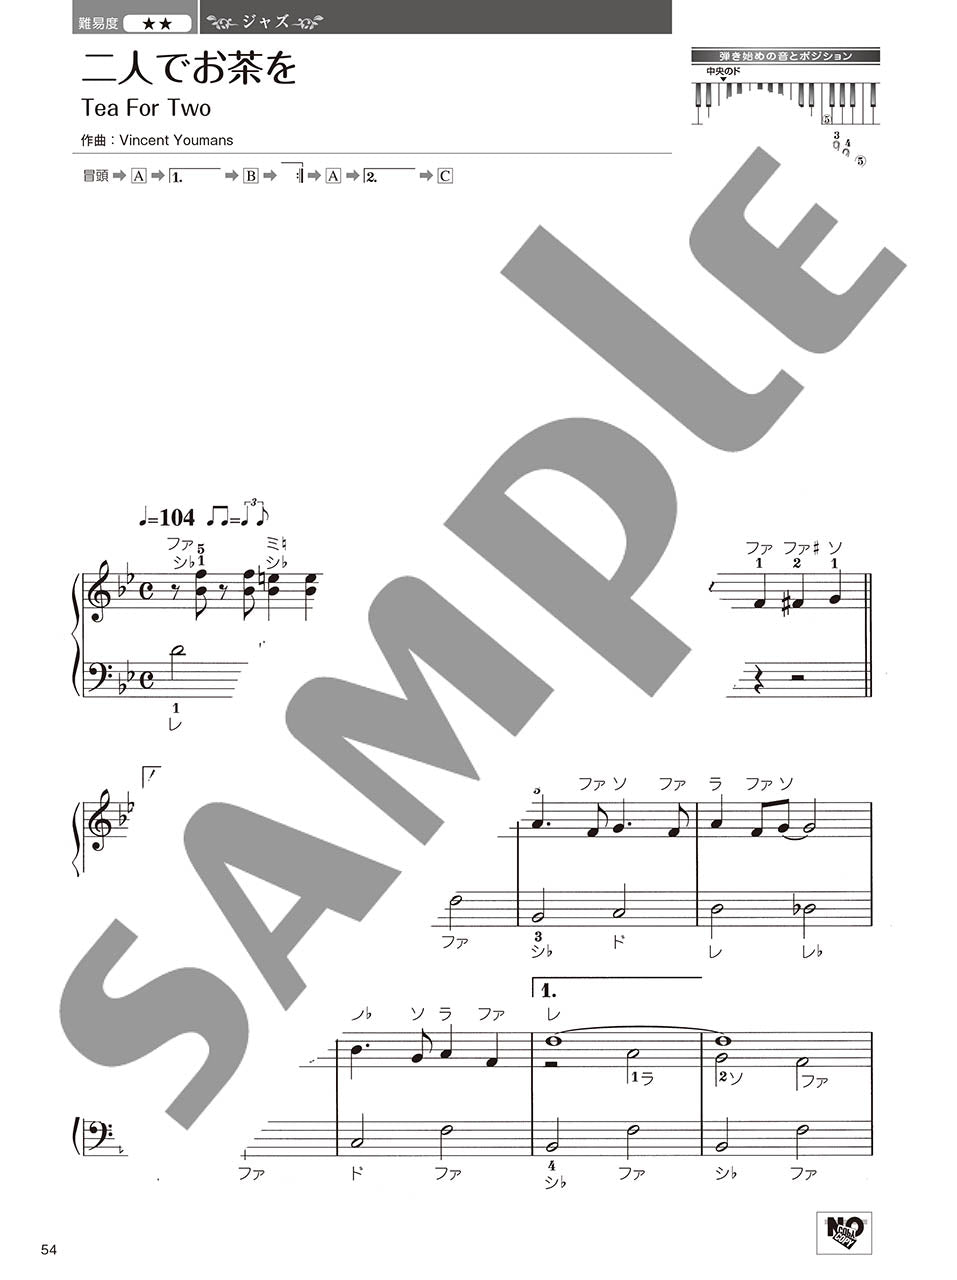 やさしく弾ける 大人のためのピアノレパートリー60 Vol.2_5